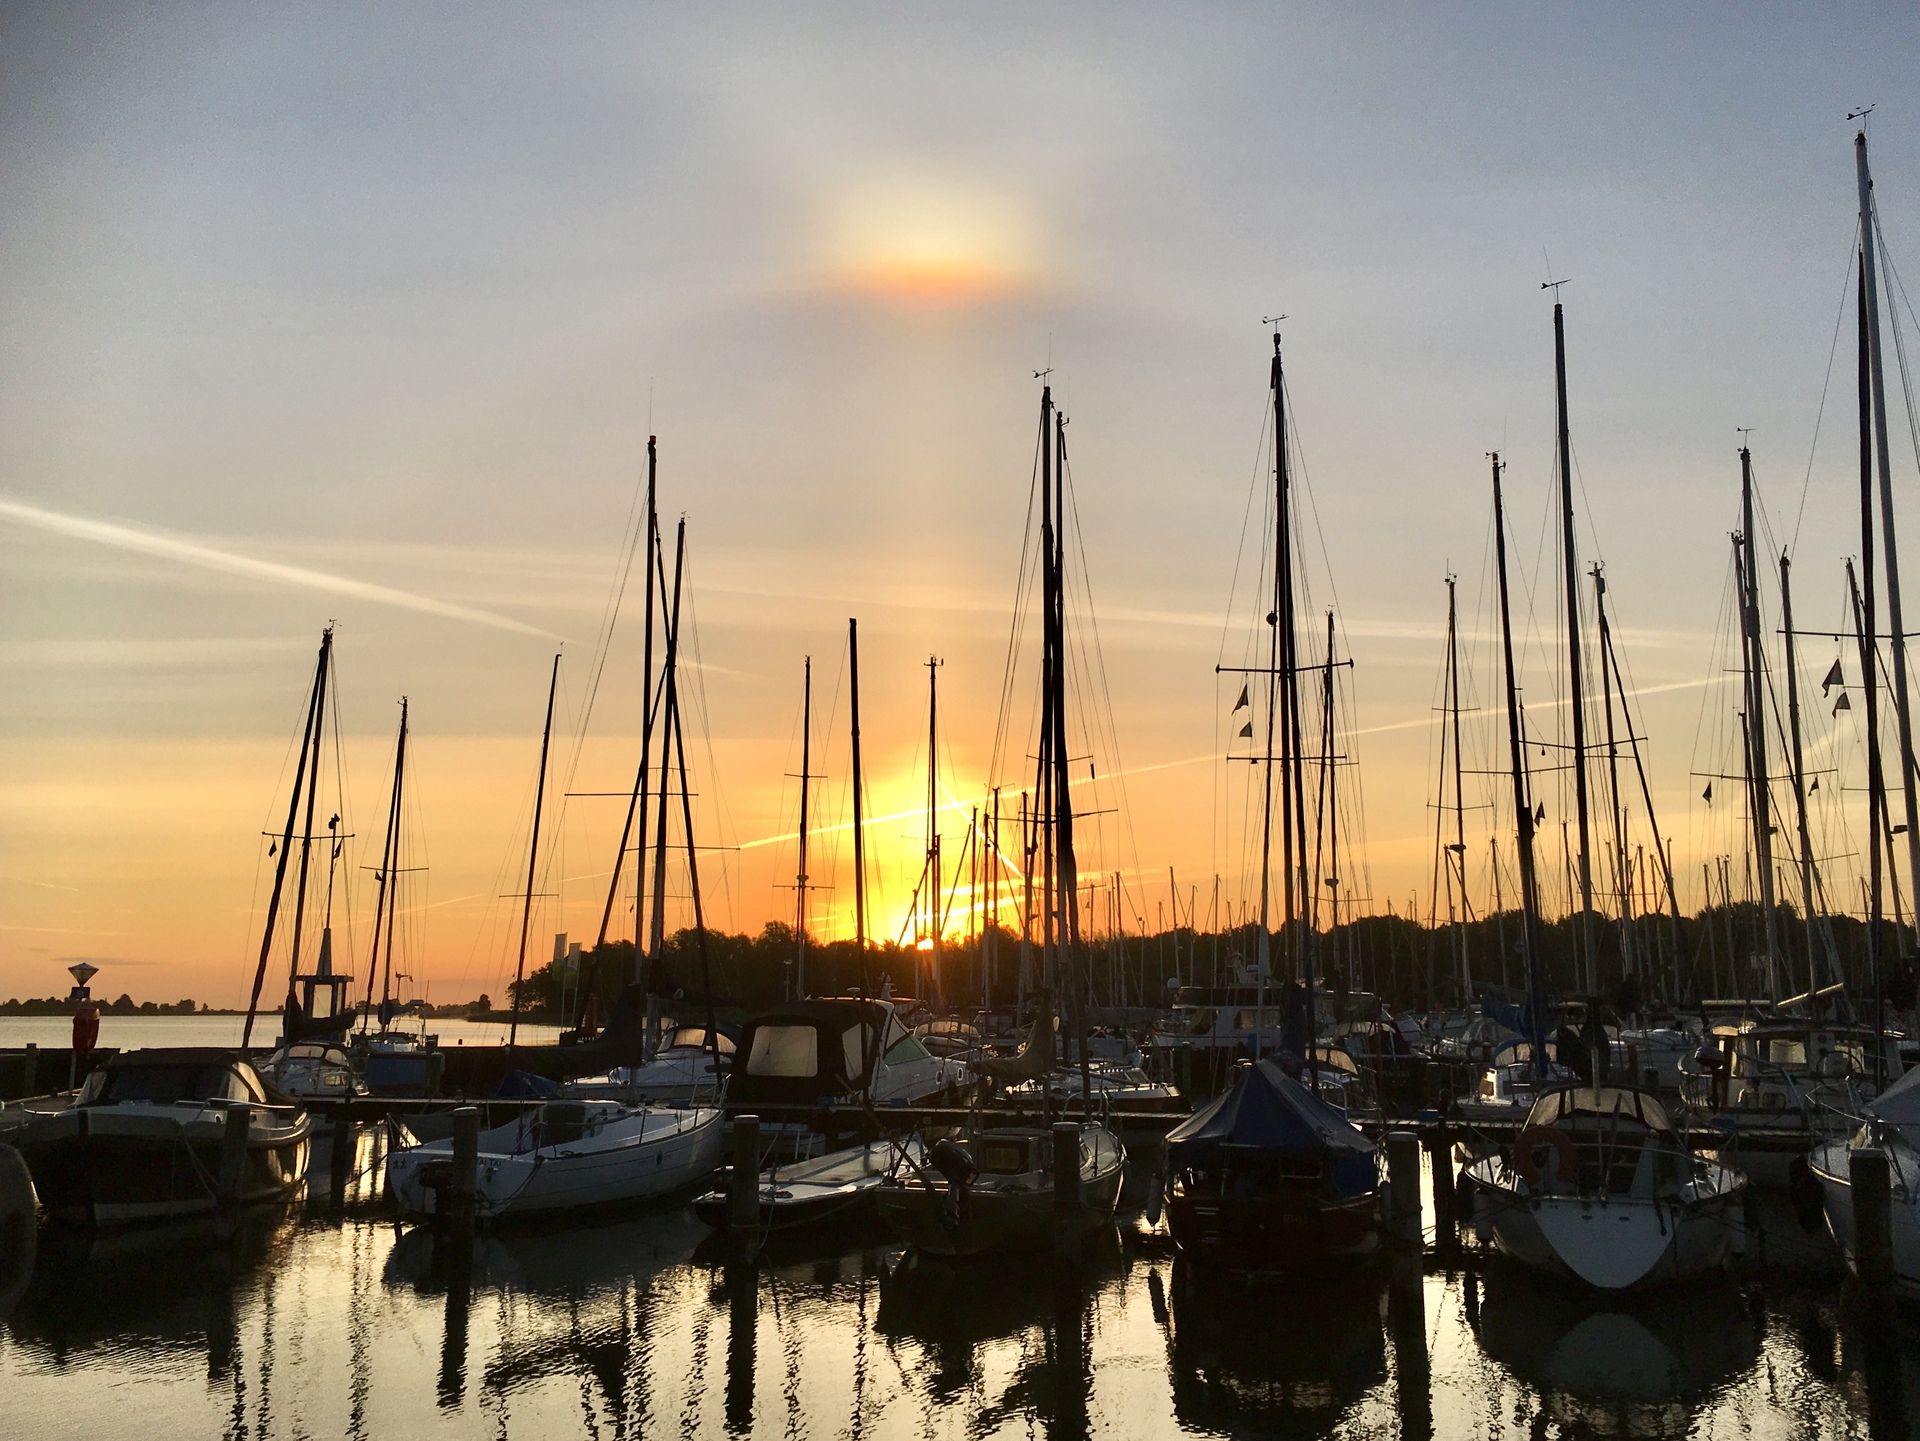 港から見る夕焼け＆朝焼け@モニケンダム、スタフォーレン、フィンケフェーンetc